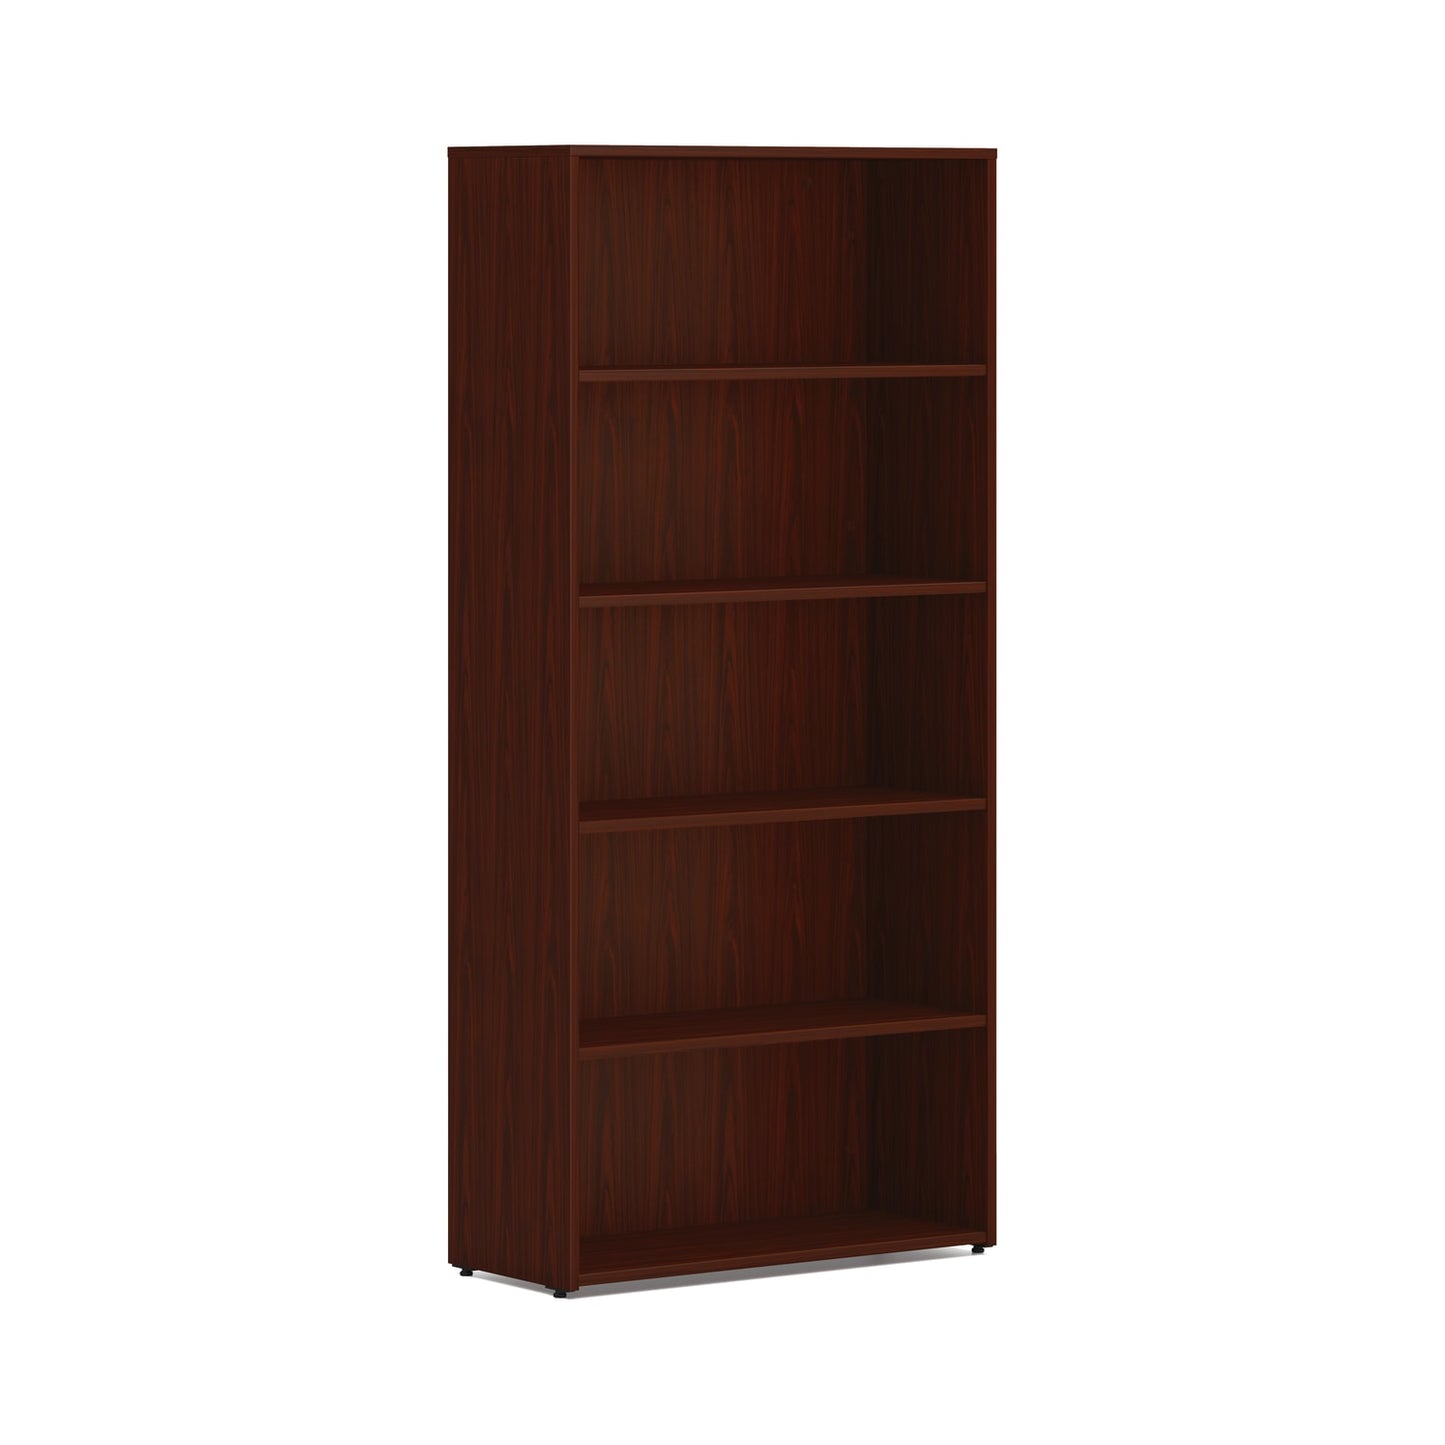 HON Mod Bookcase | 5 Shelves | 30"W | Traditional Mahogany Finish